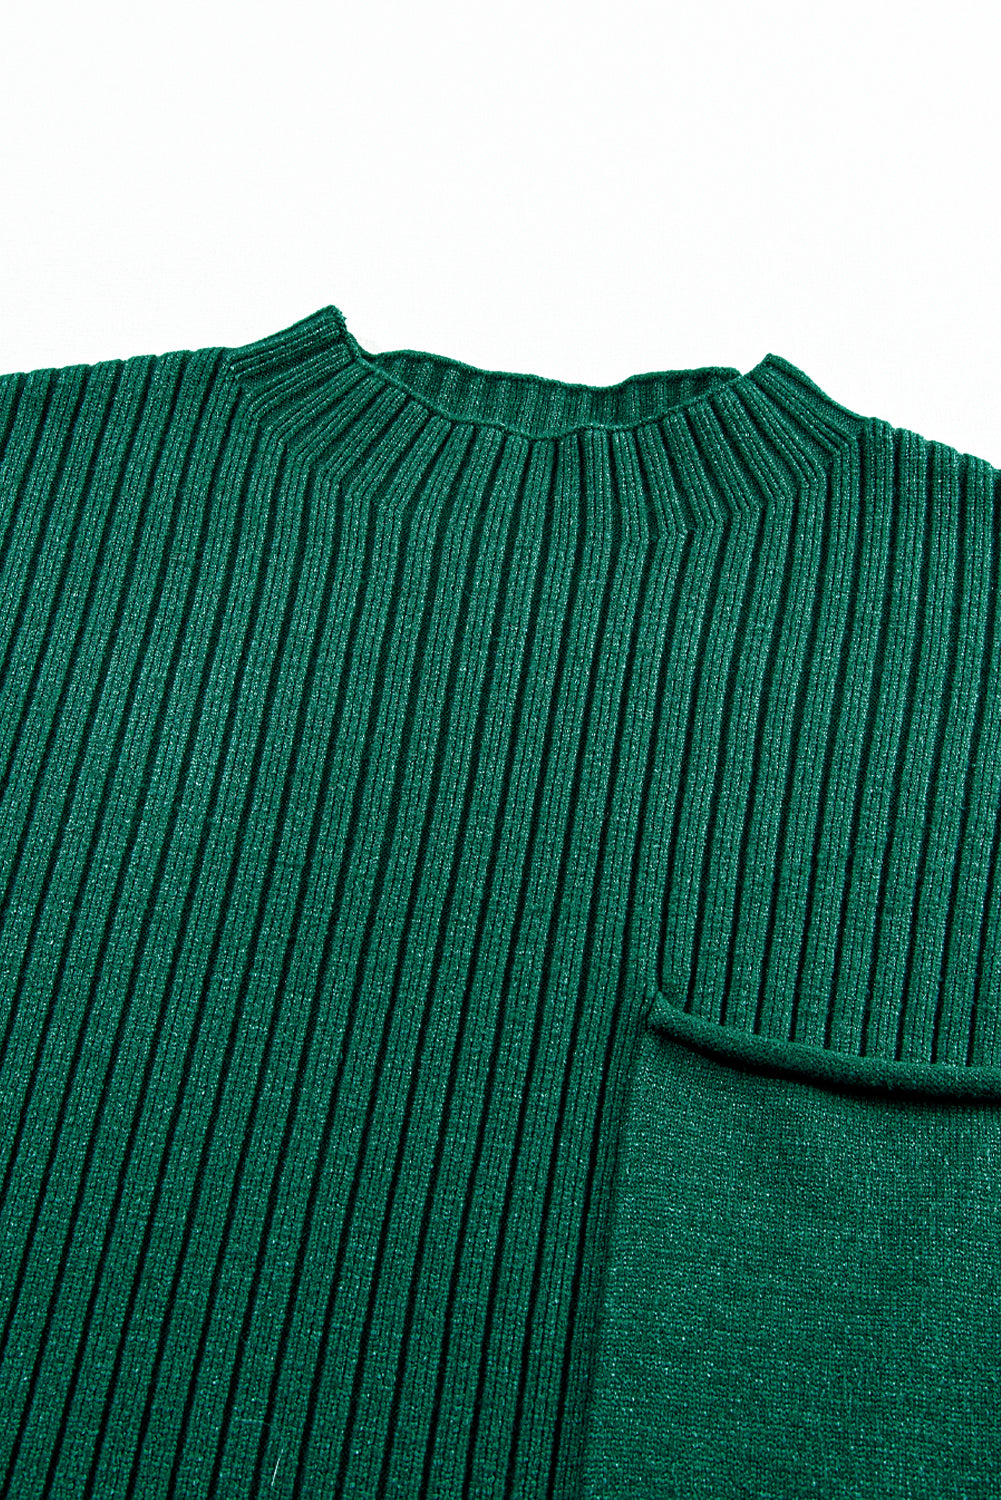 Črnkasto zelena pletena obleka s kratkimi rokavi in ​​rebrastimi žepi